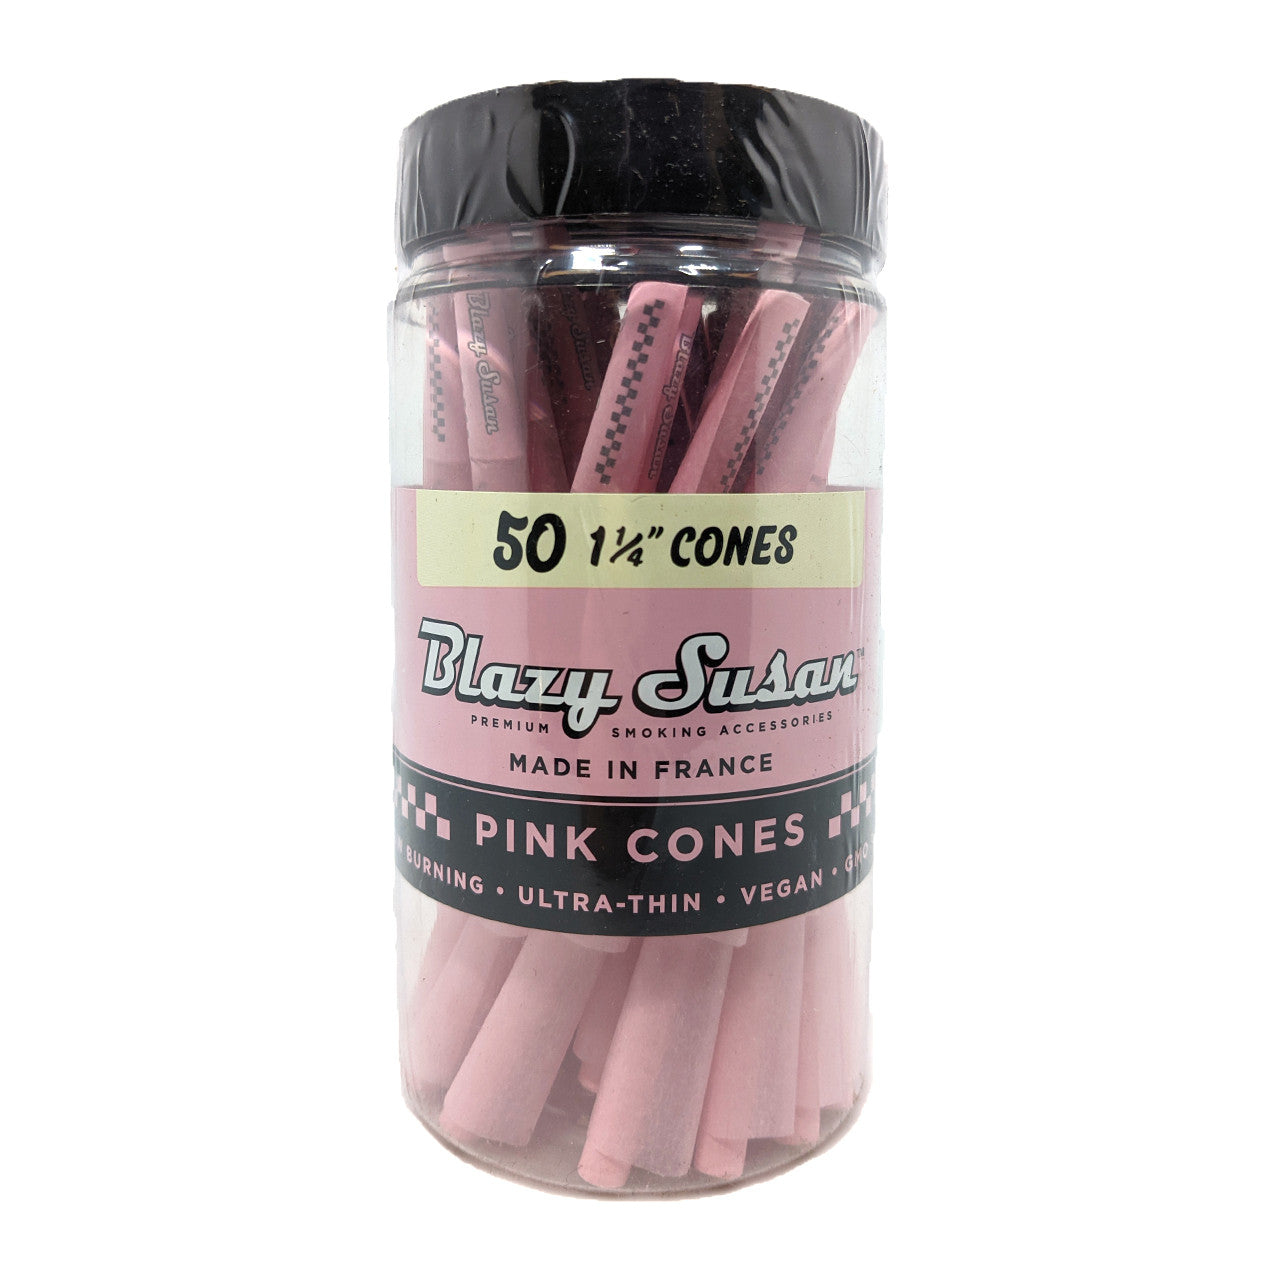 Blazy Susan Pink 1¼ Pre-Roll Cones - Jar of 50 - Online Vape Shop | Alternative pods | Affordable Vapor Store | Vape Disposables